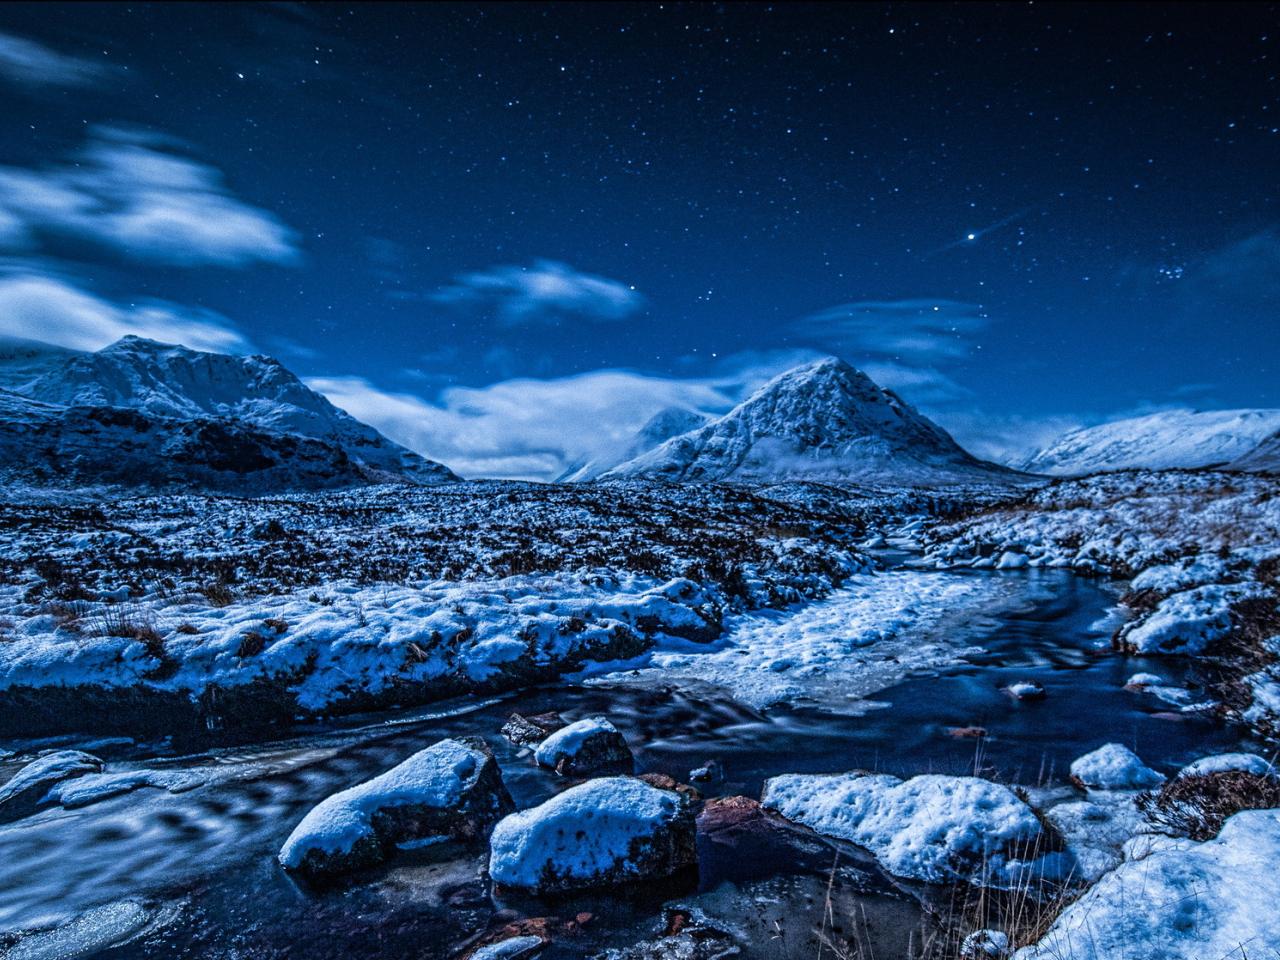 обои Ручей среди снежных гор,   зимней ночью фото